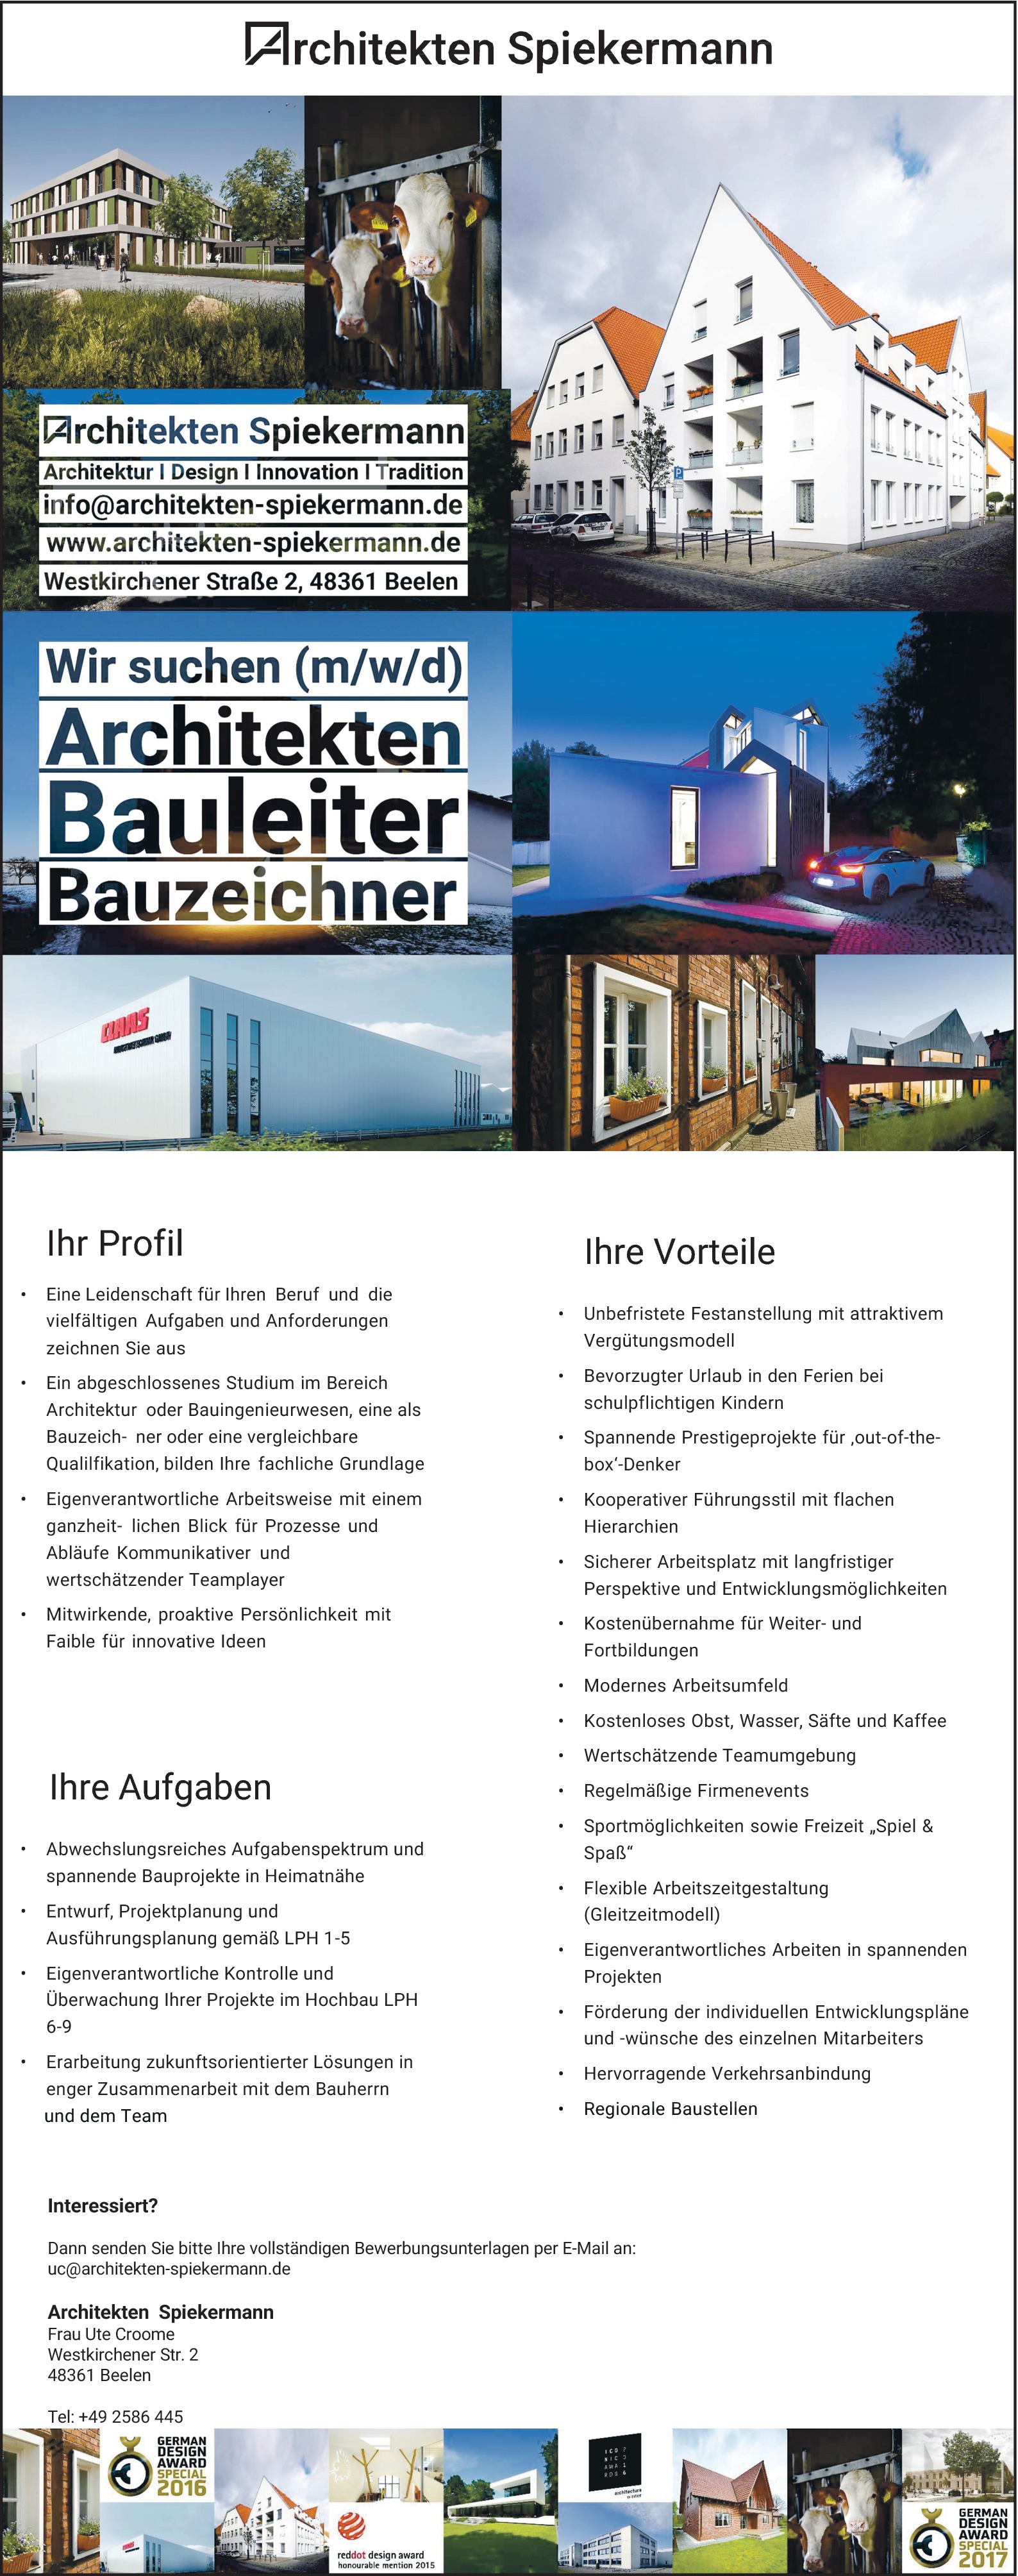 Bauleiter (m/w/d)